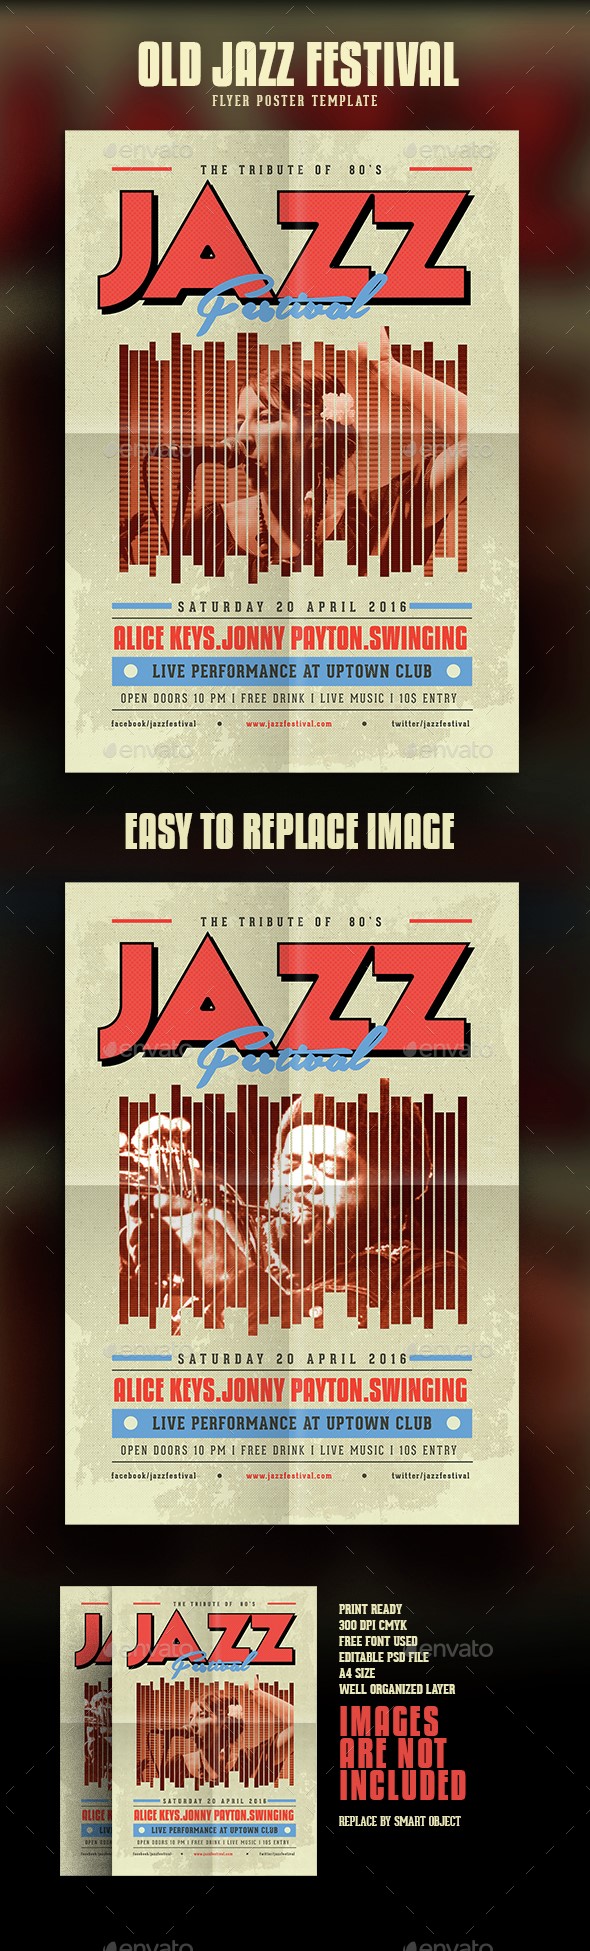 بروشور نسخه قدیمی جاز